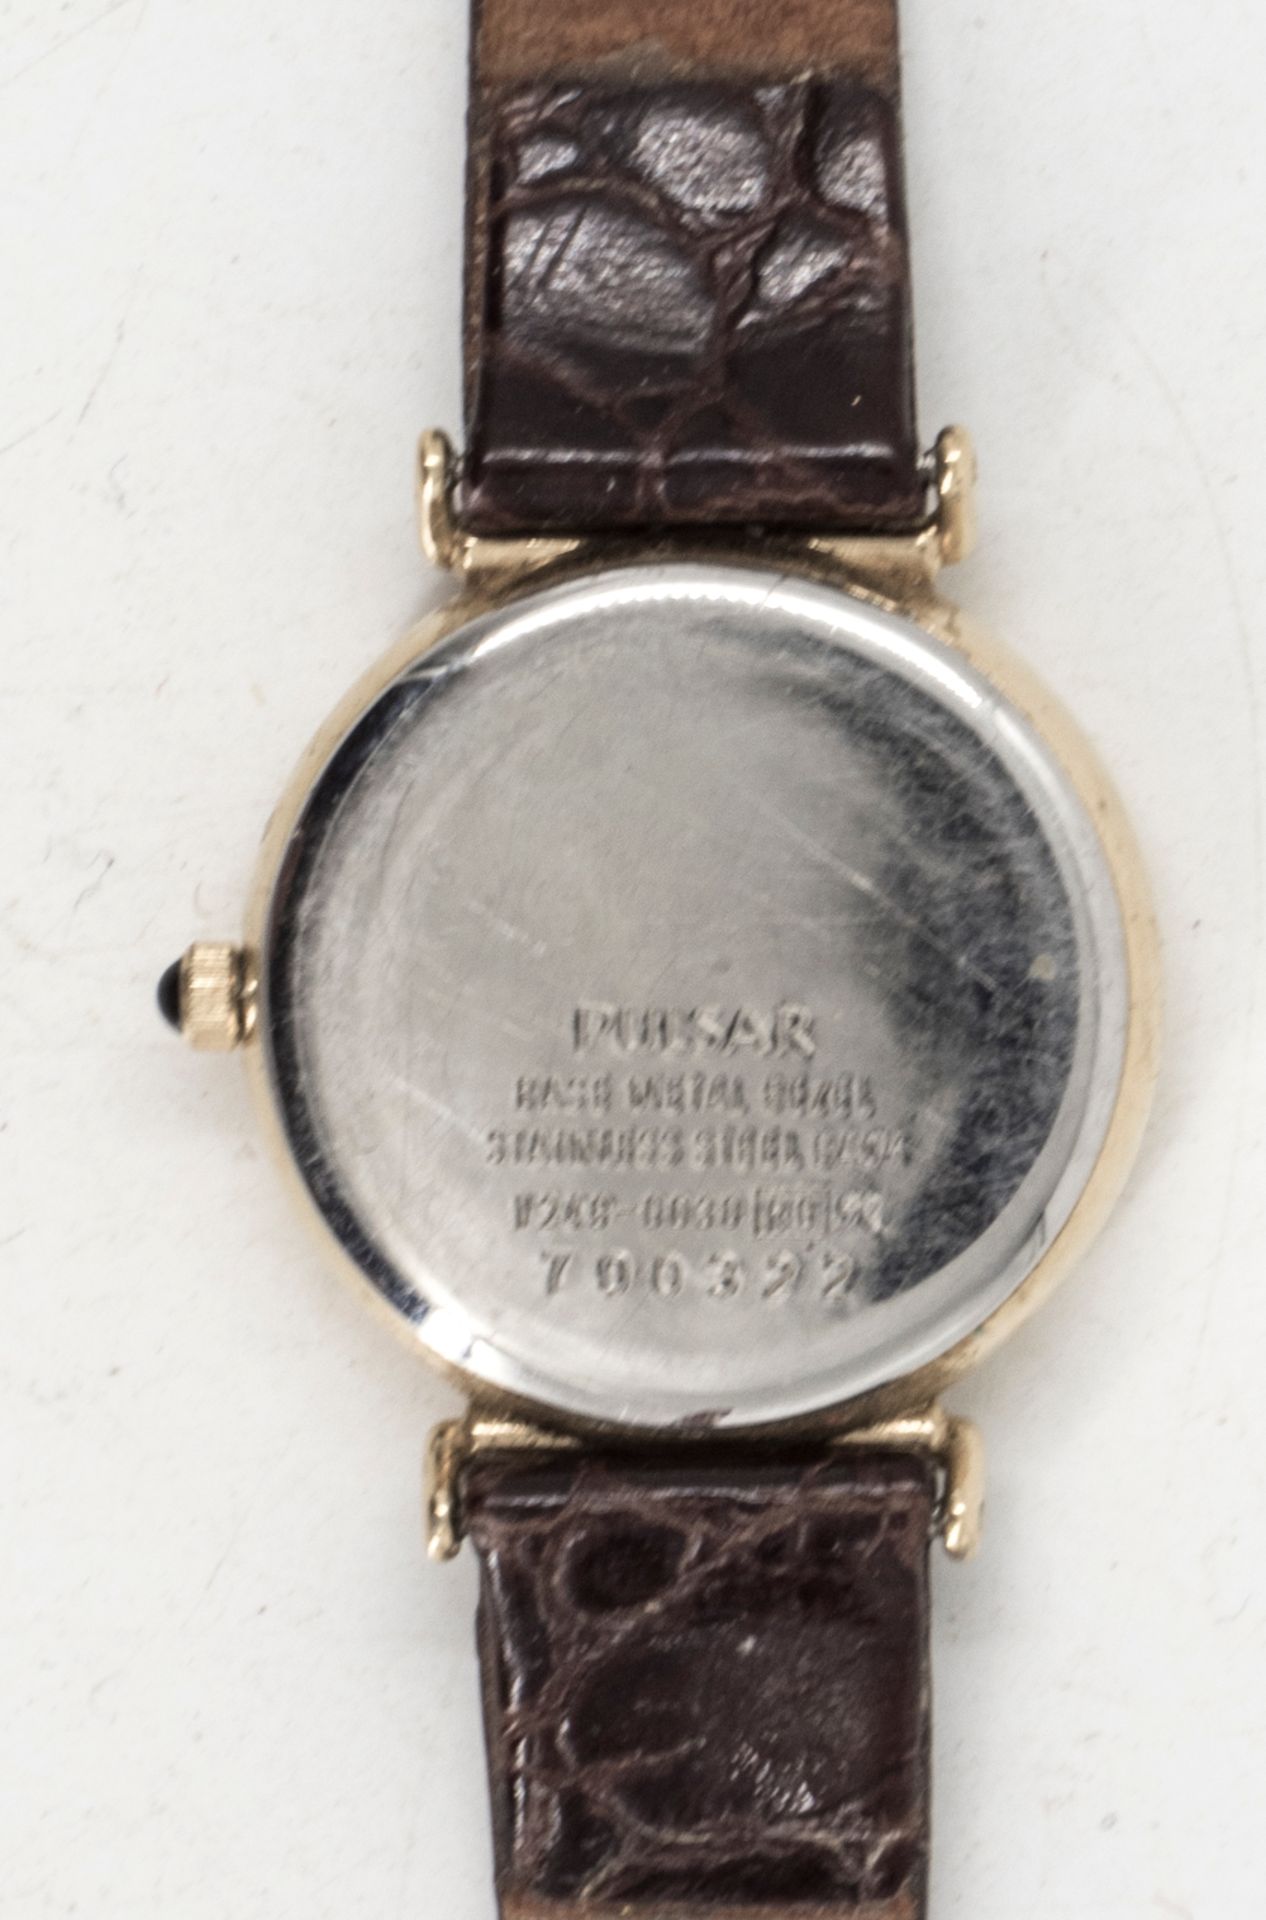 Pulsar Quartz Damenarmbanduhr, Datumsanzeige, Lederarmband. - Bild 3 aus 3